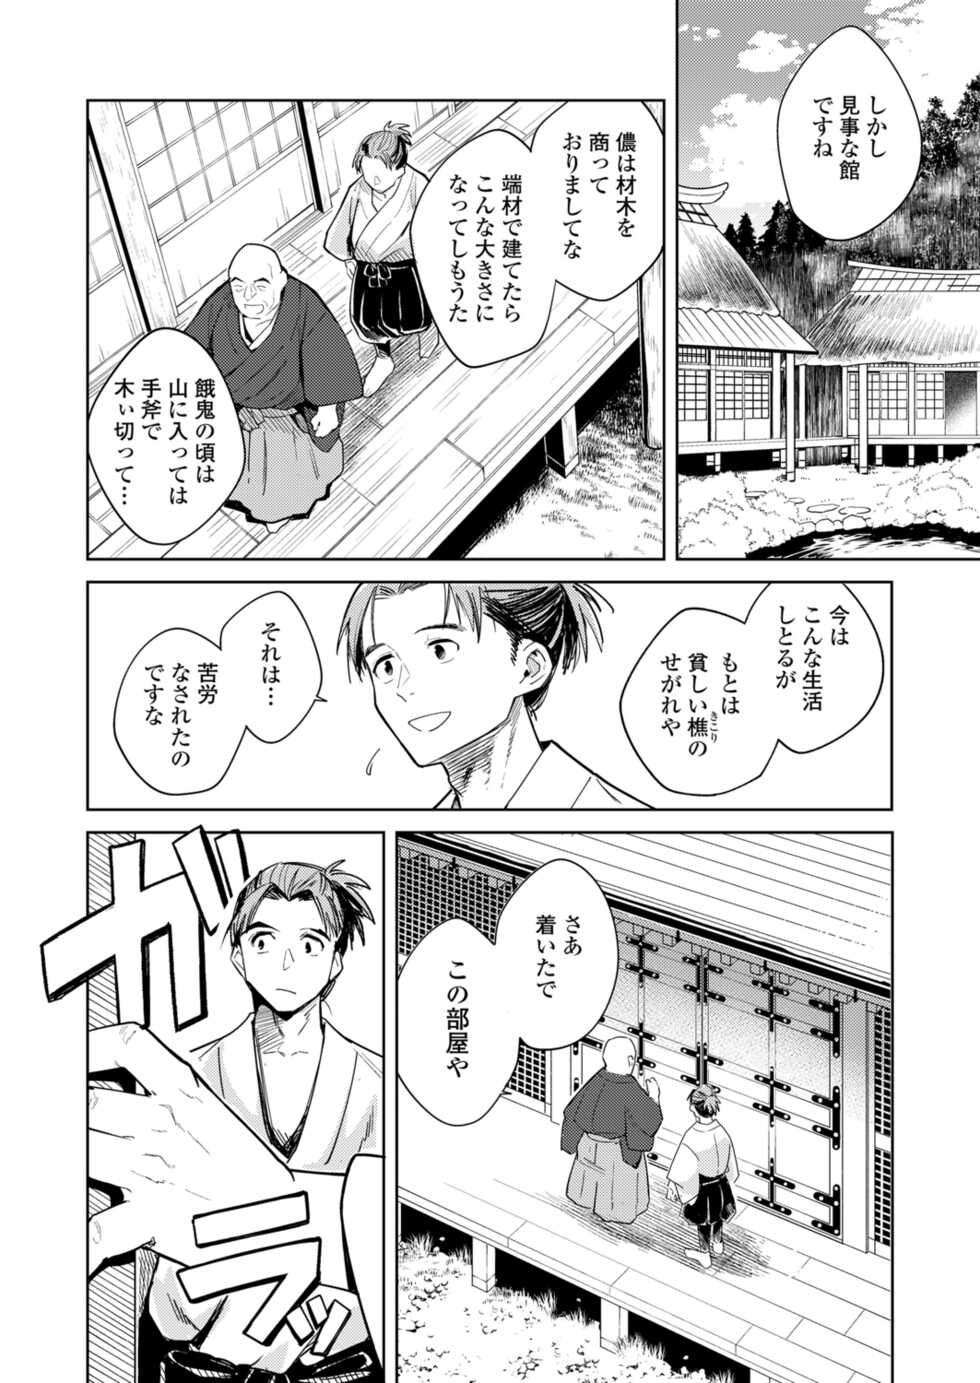 Towako 12 [Digital] - Page 6